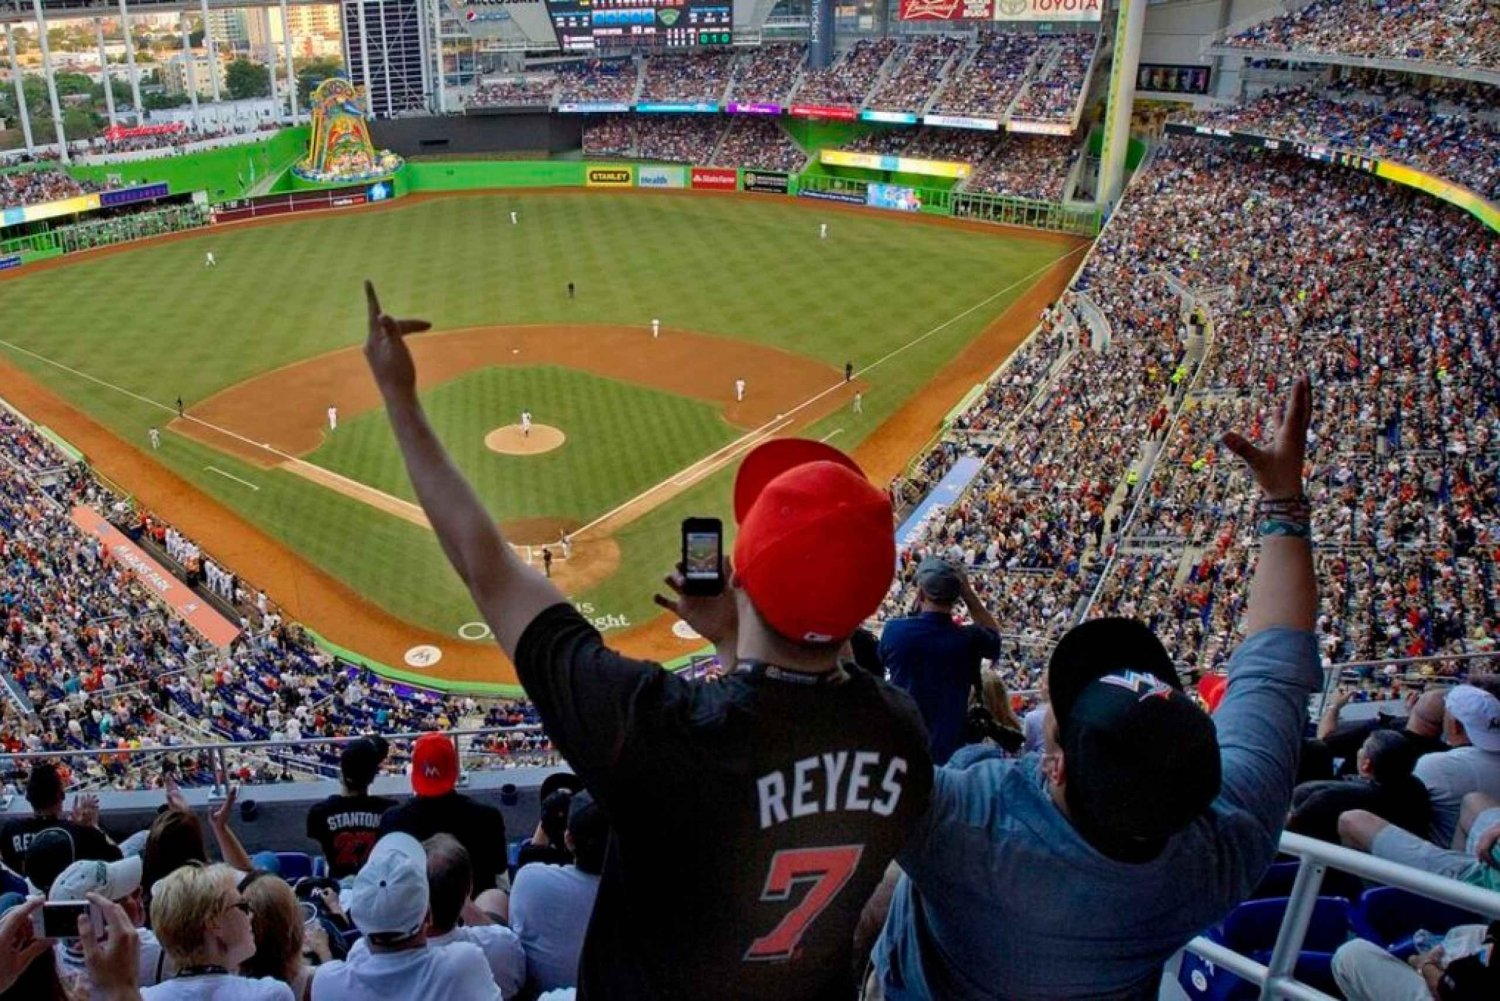 Miami: Bilet na mecz baseballowy Miami Marlins w loandepot Park